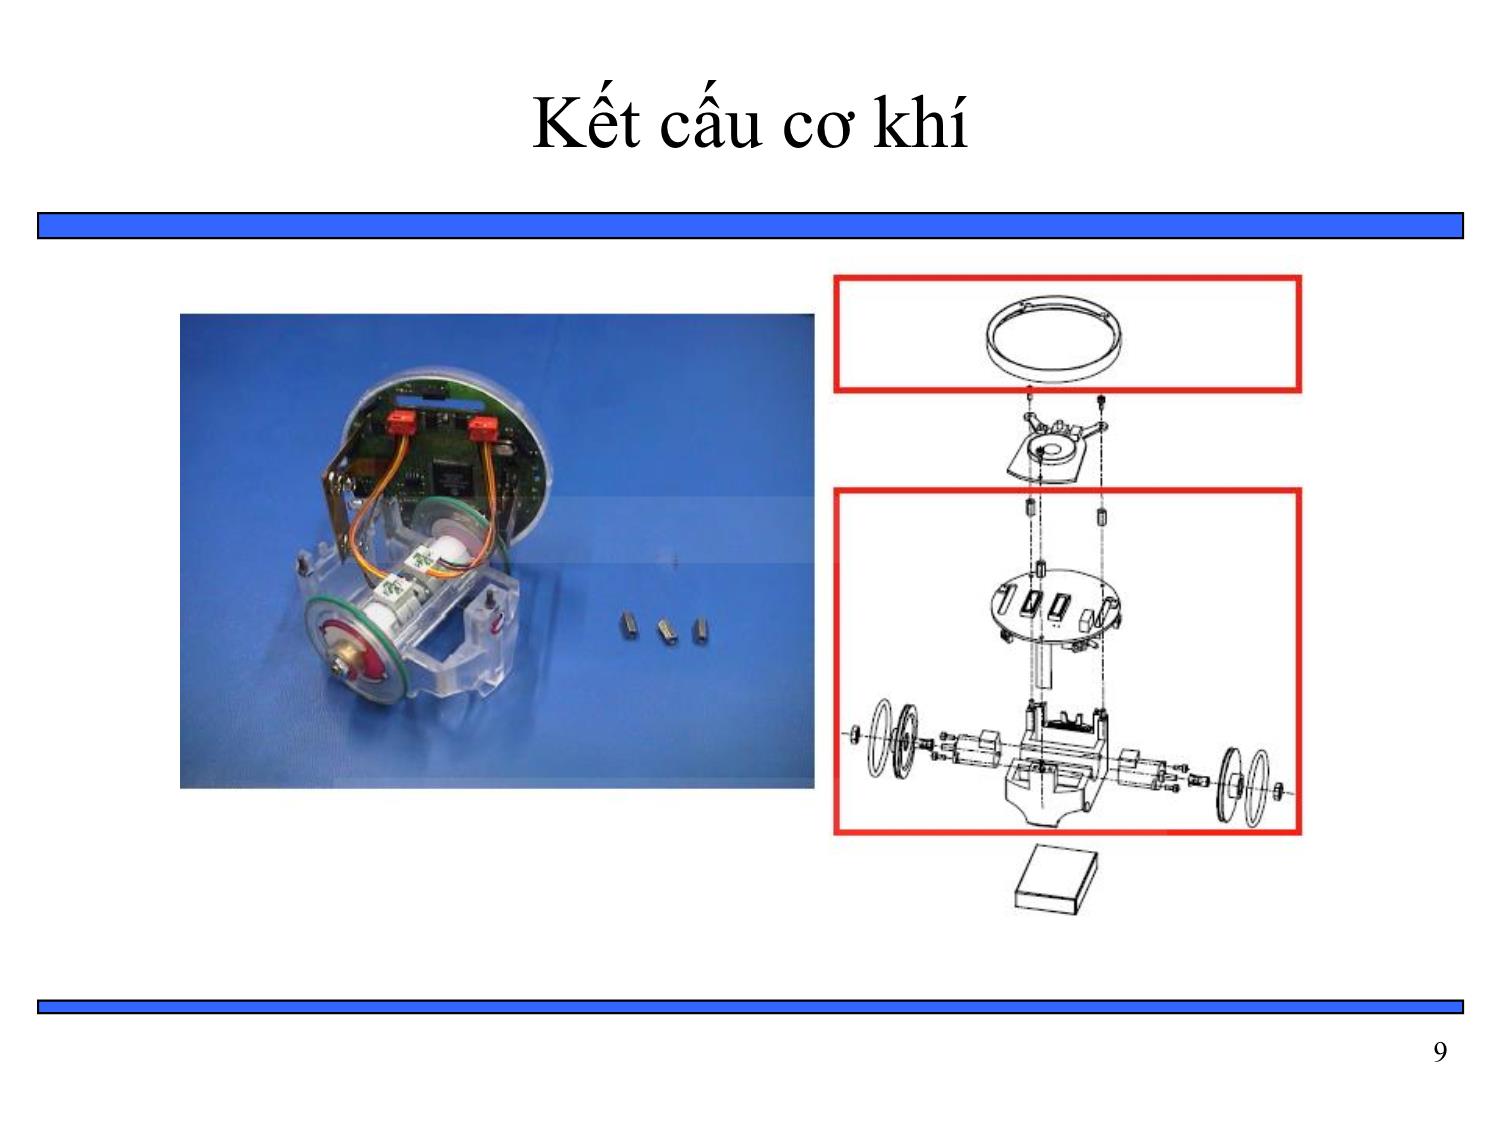 Bài giảng Thiết kế hệ thống nhúng - Chương 6: Tổng hợp phần cứng và phần mềm - Bài 10: Ví dụ về hệ thống nhúng mobile robot trang 9